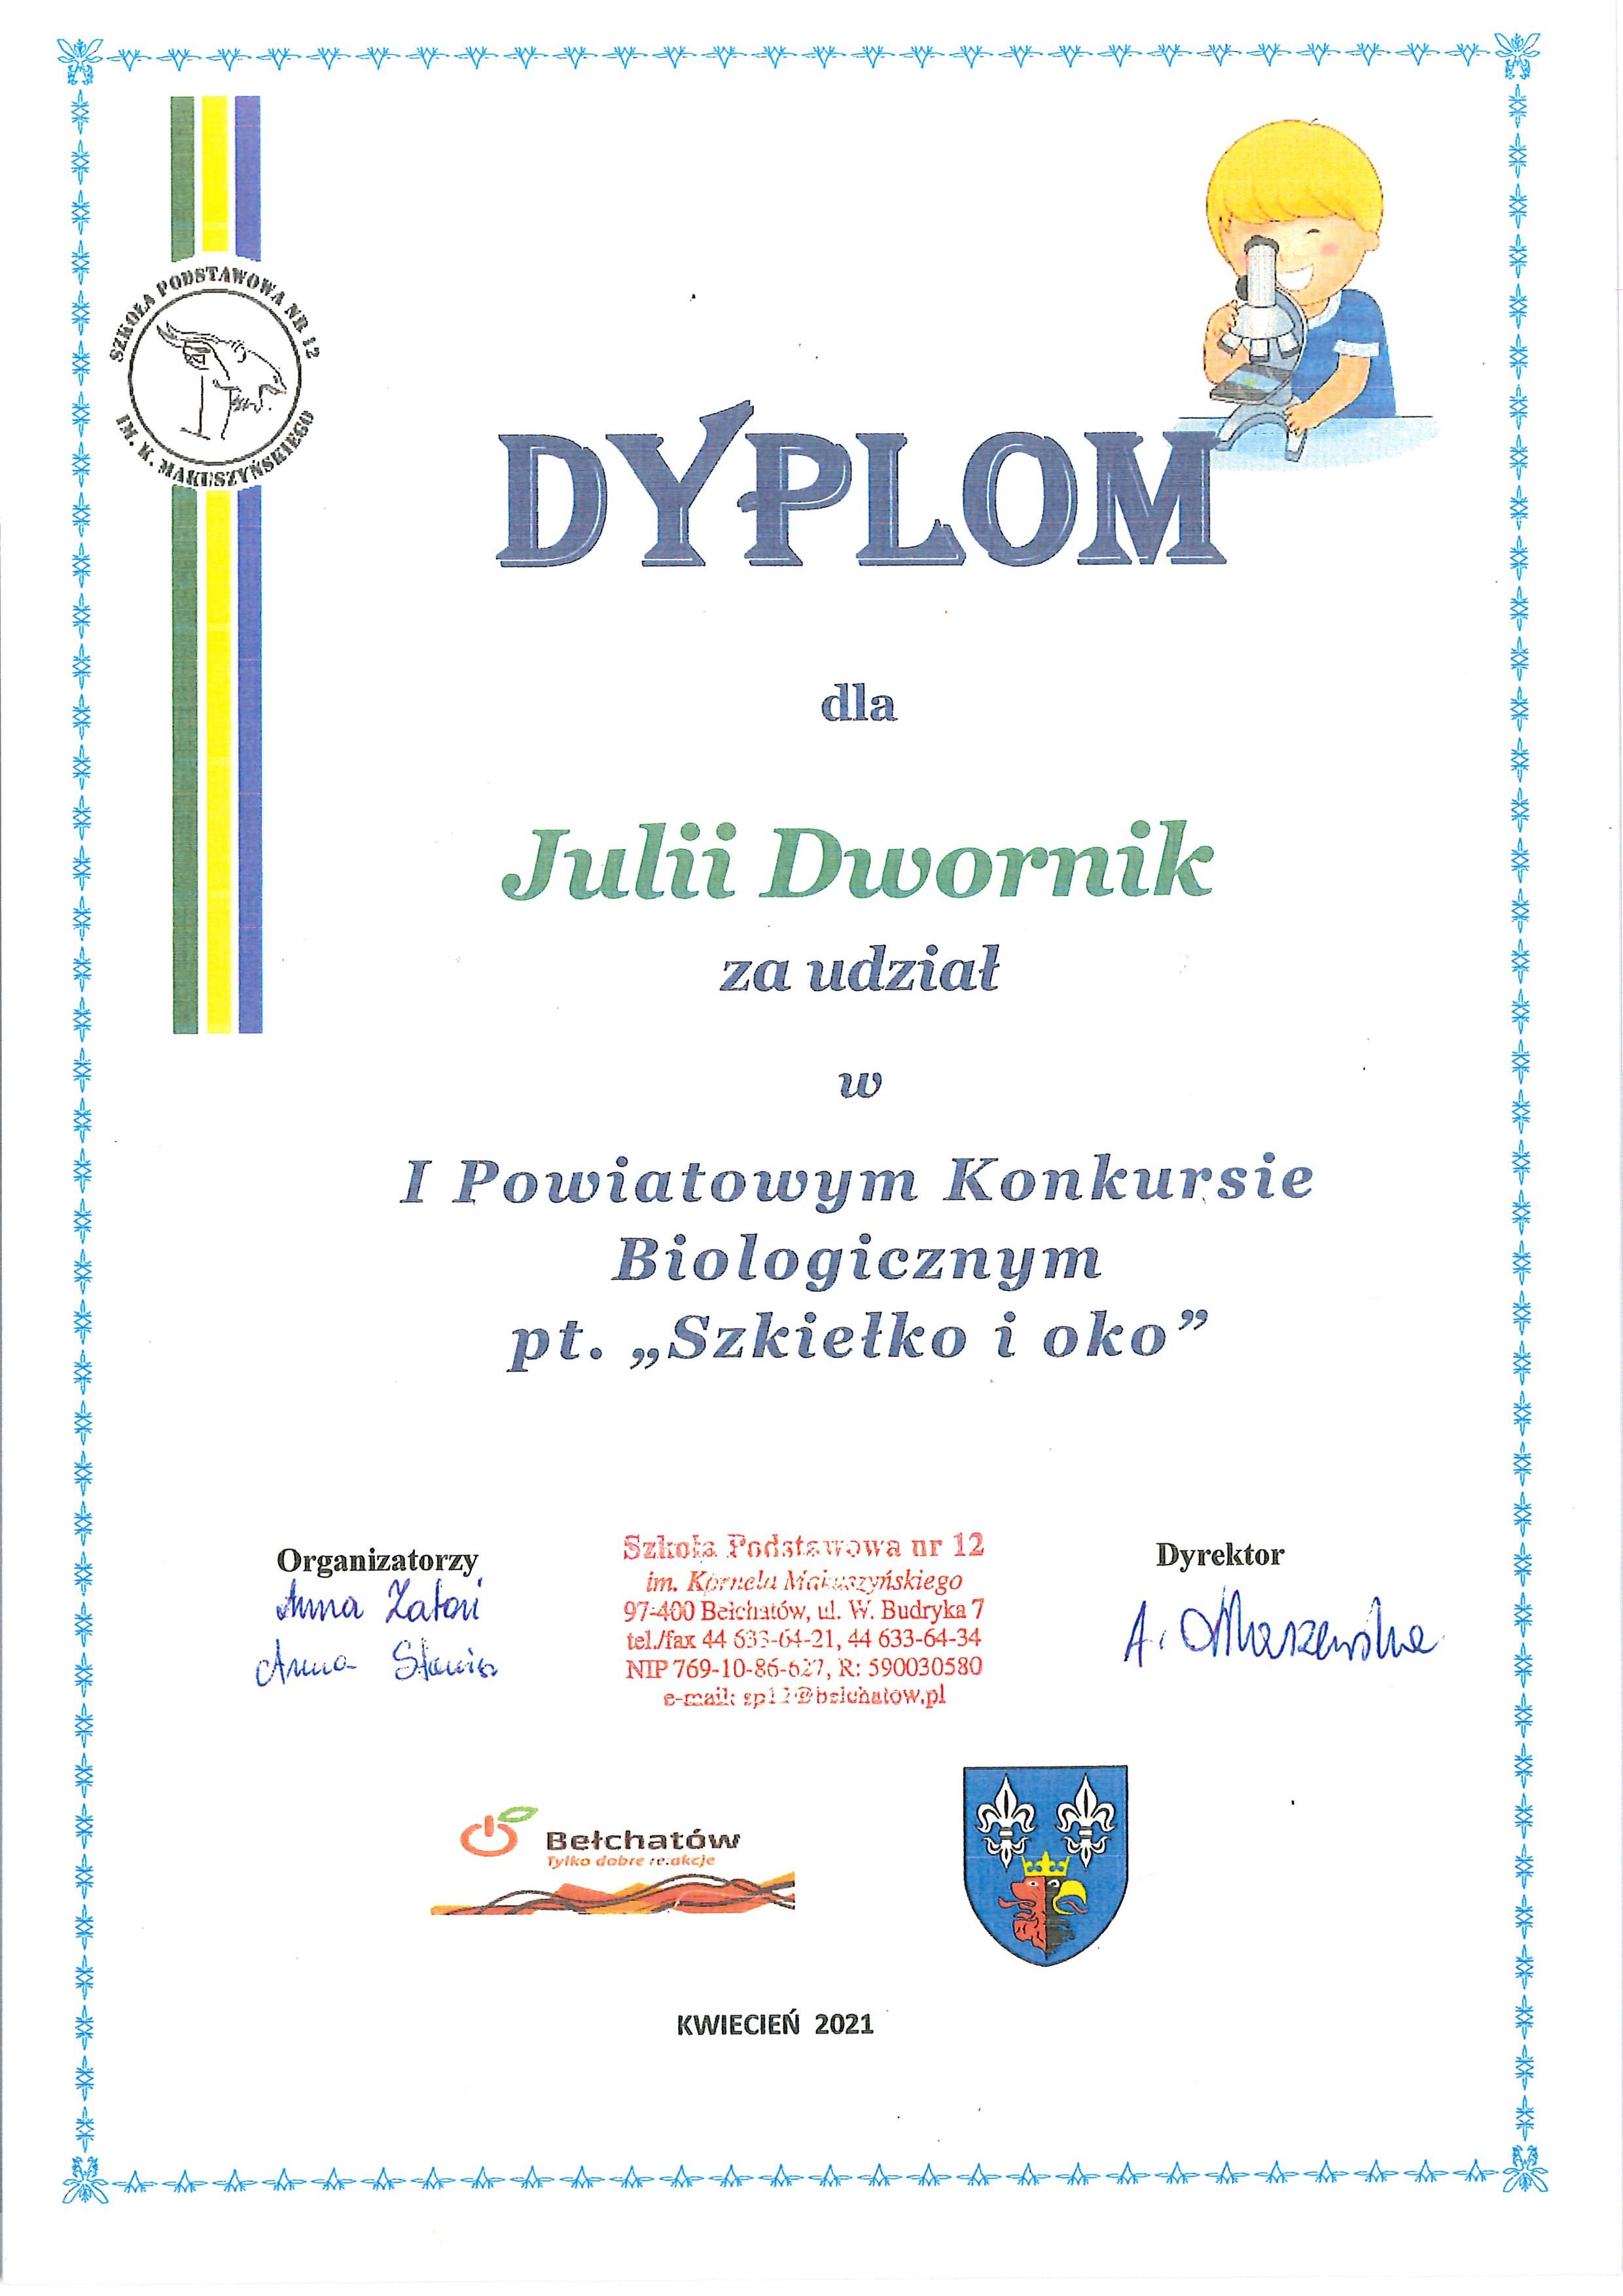 Dyplom dla Julii Dwornik